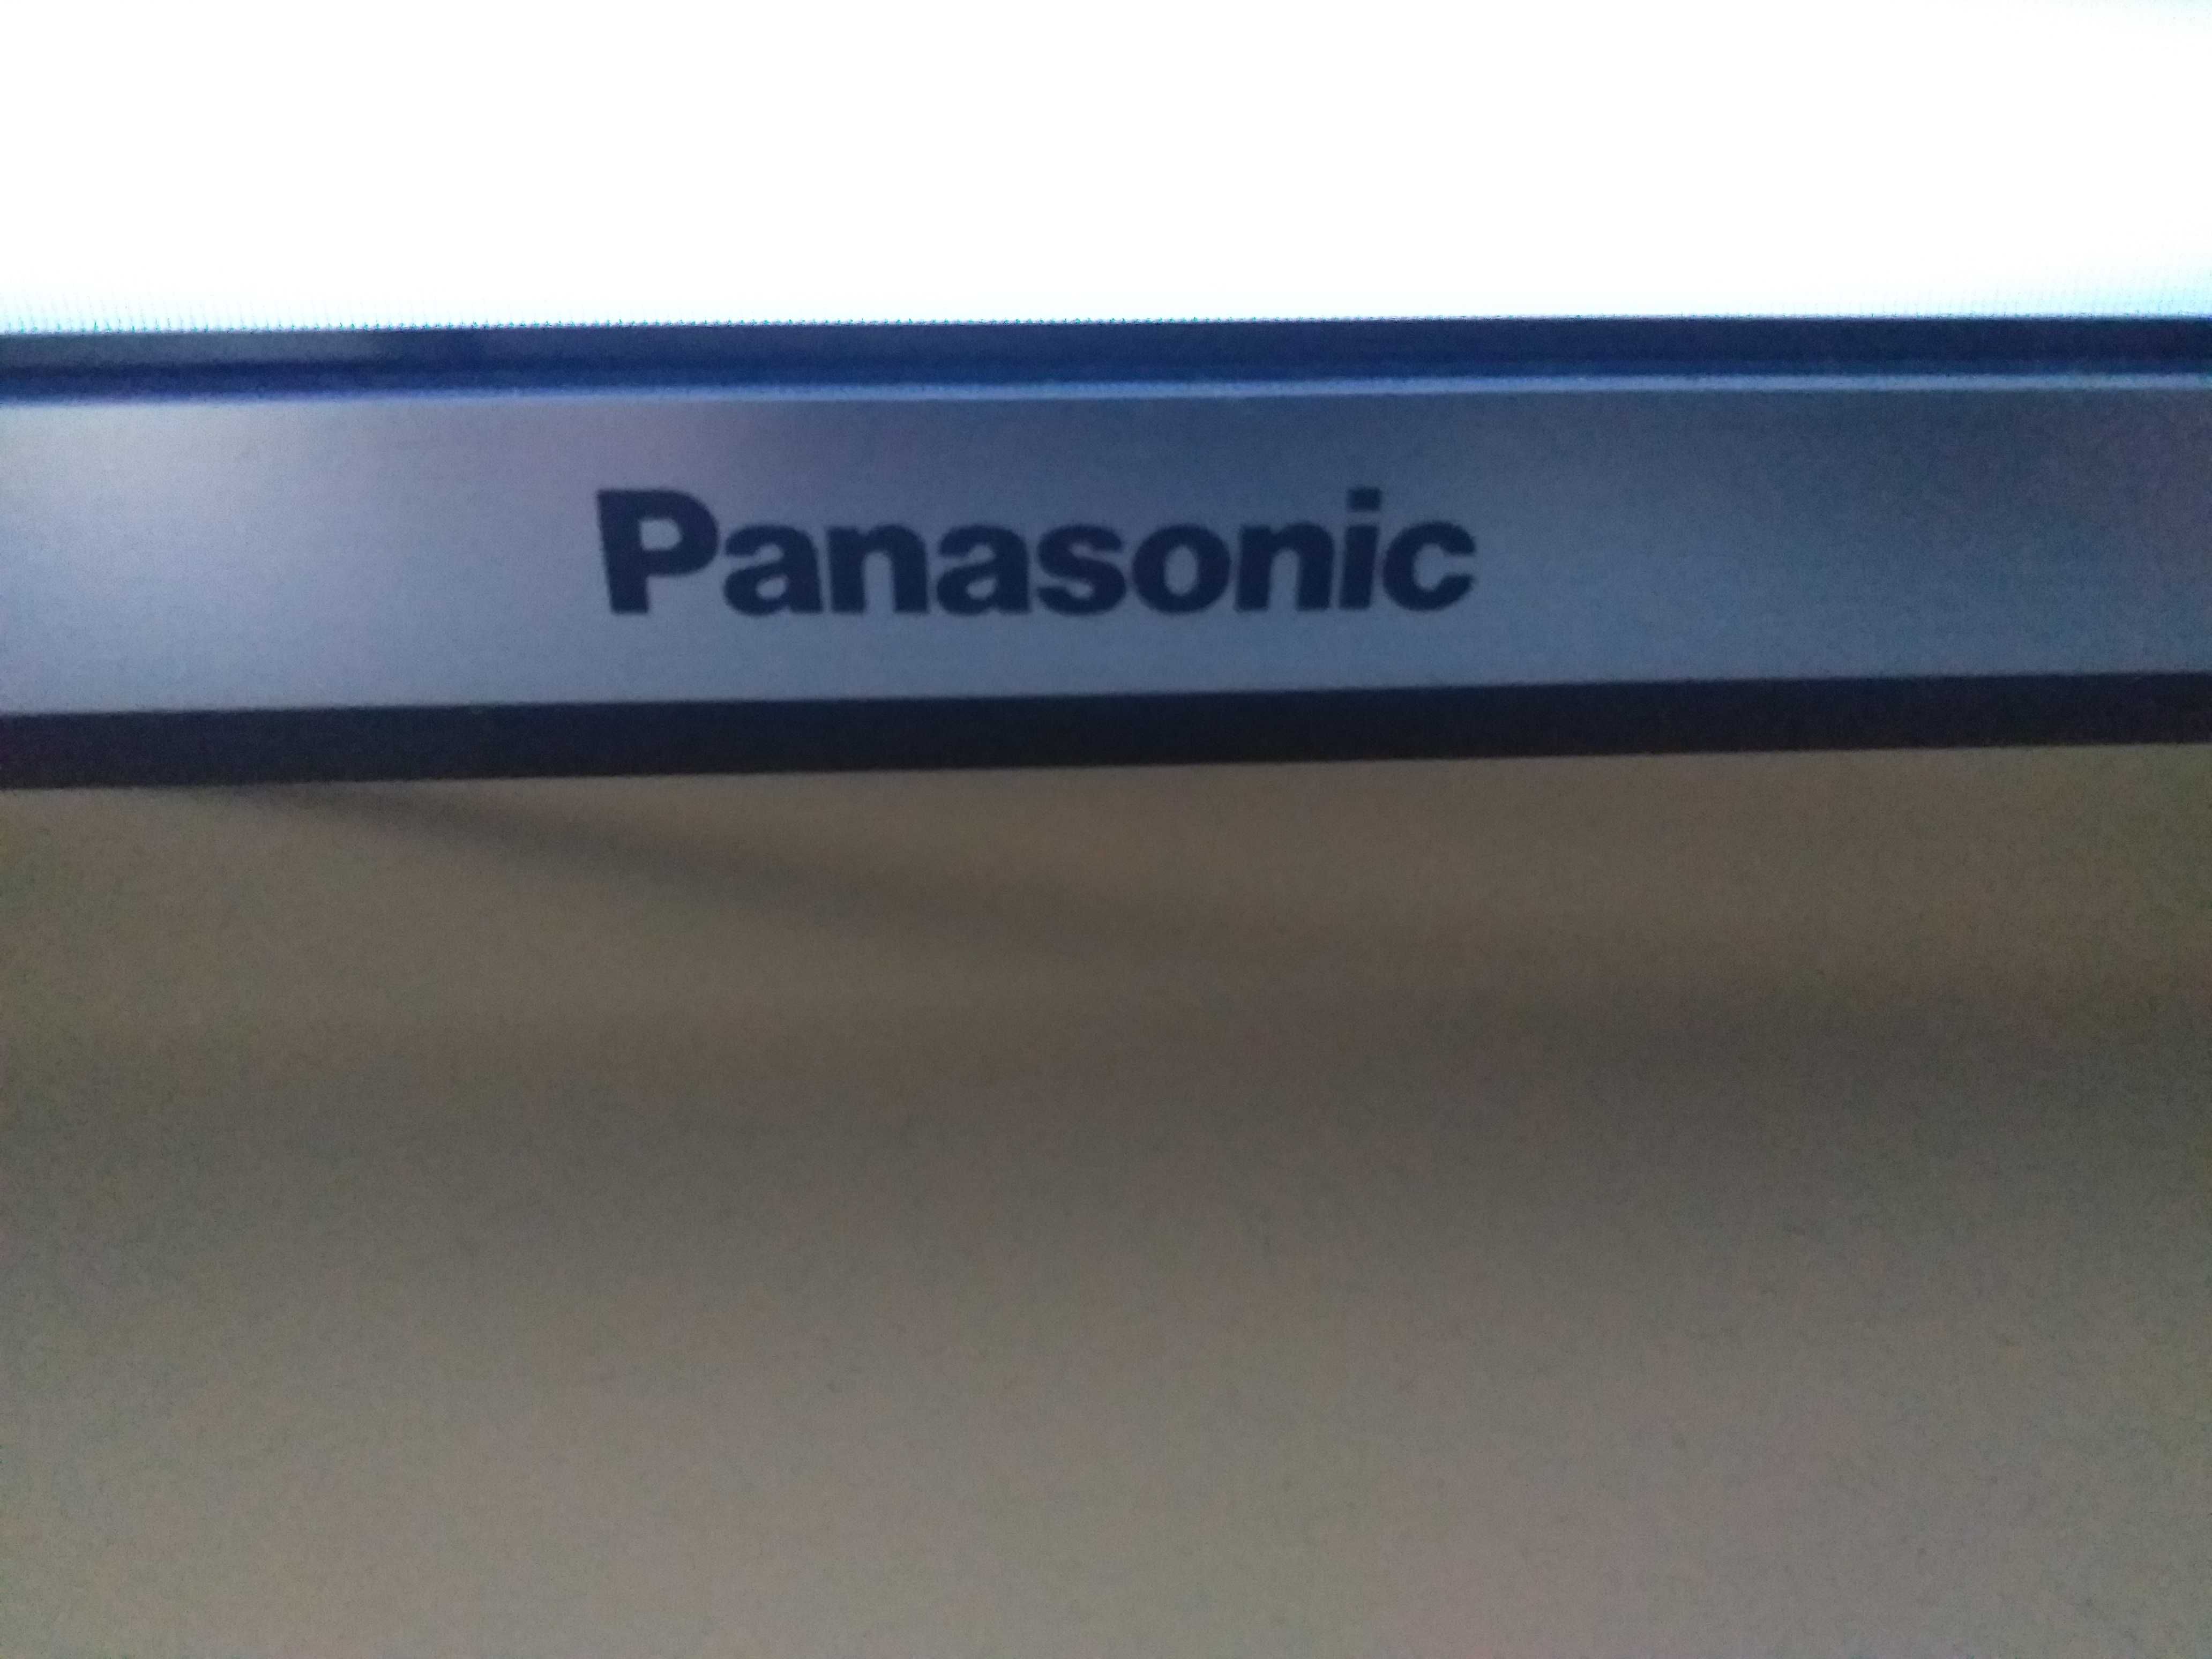 telewizor Panasonic AS 650 led 1200htz